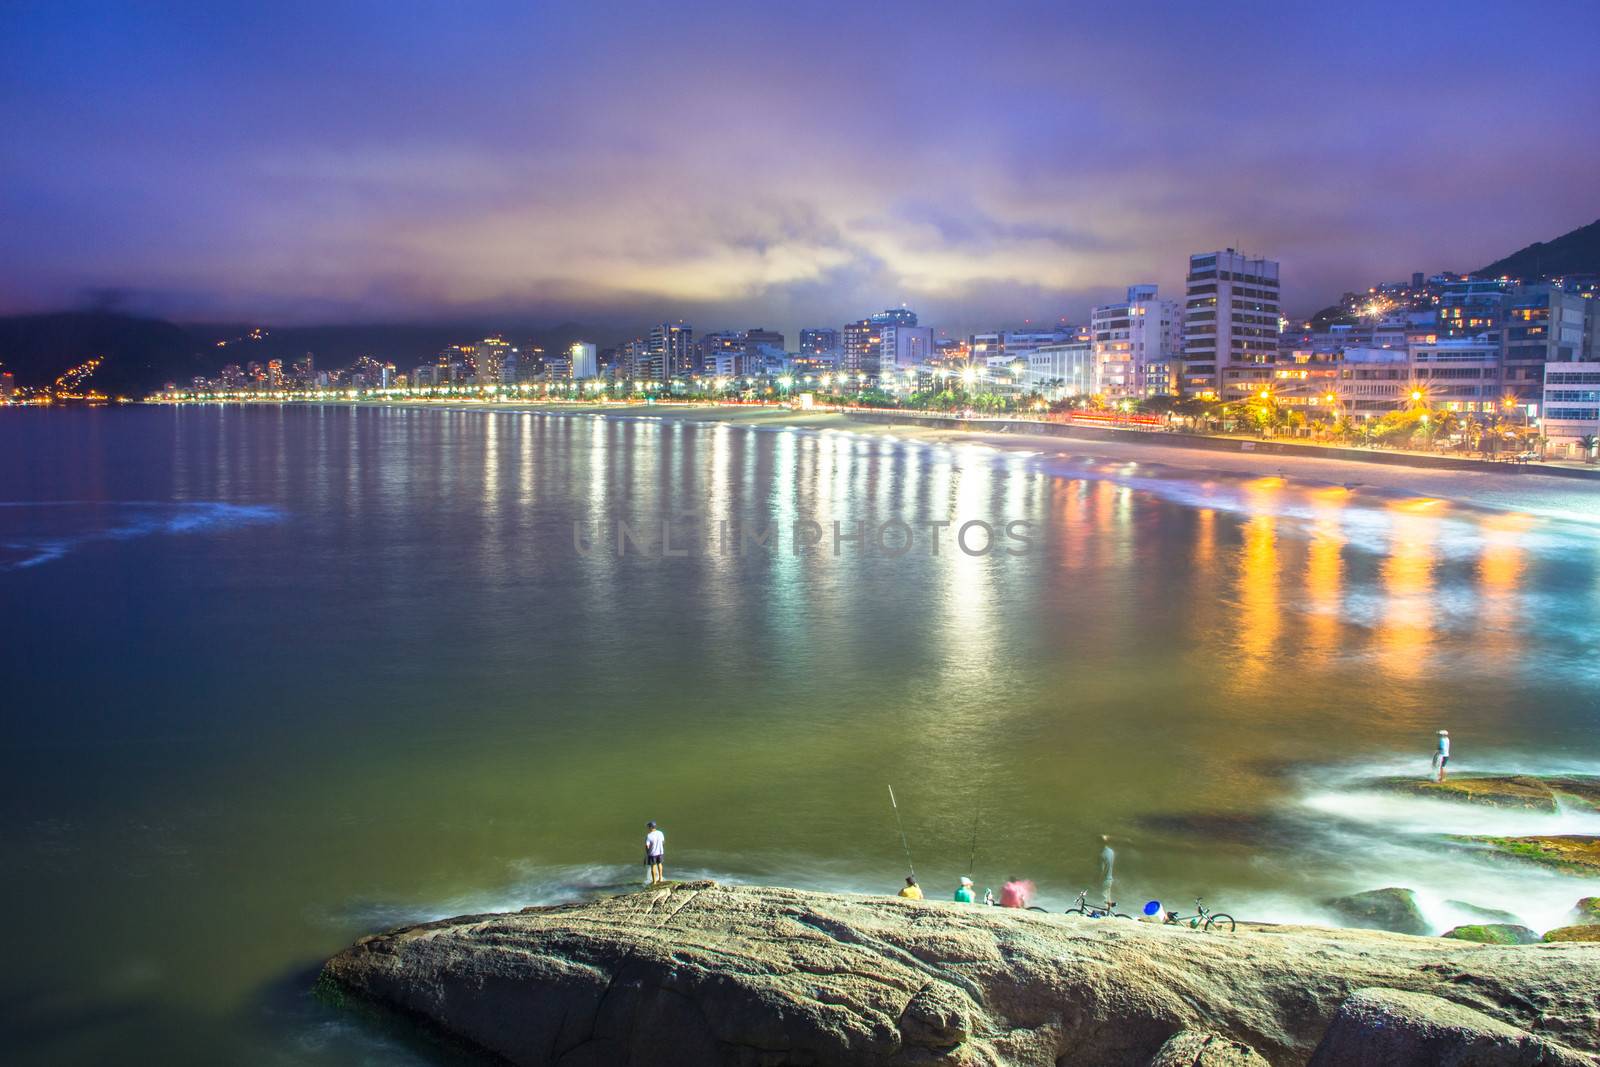 Ipanema beach, Rio de Janeiro, Brazil. by kasto